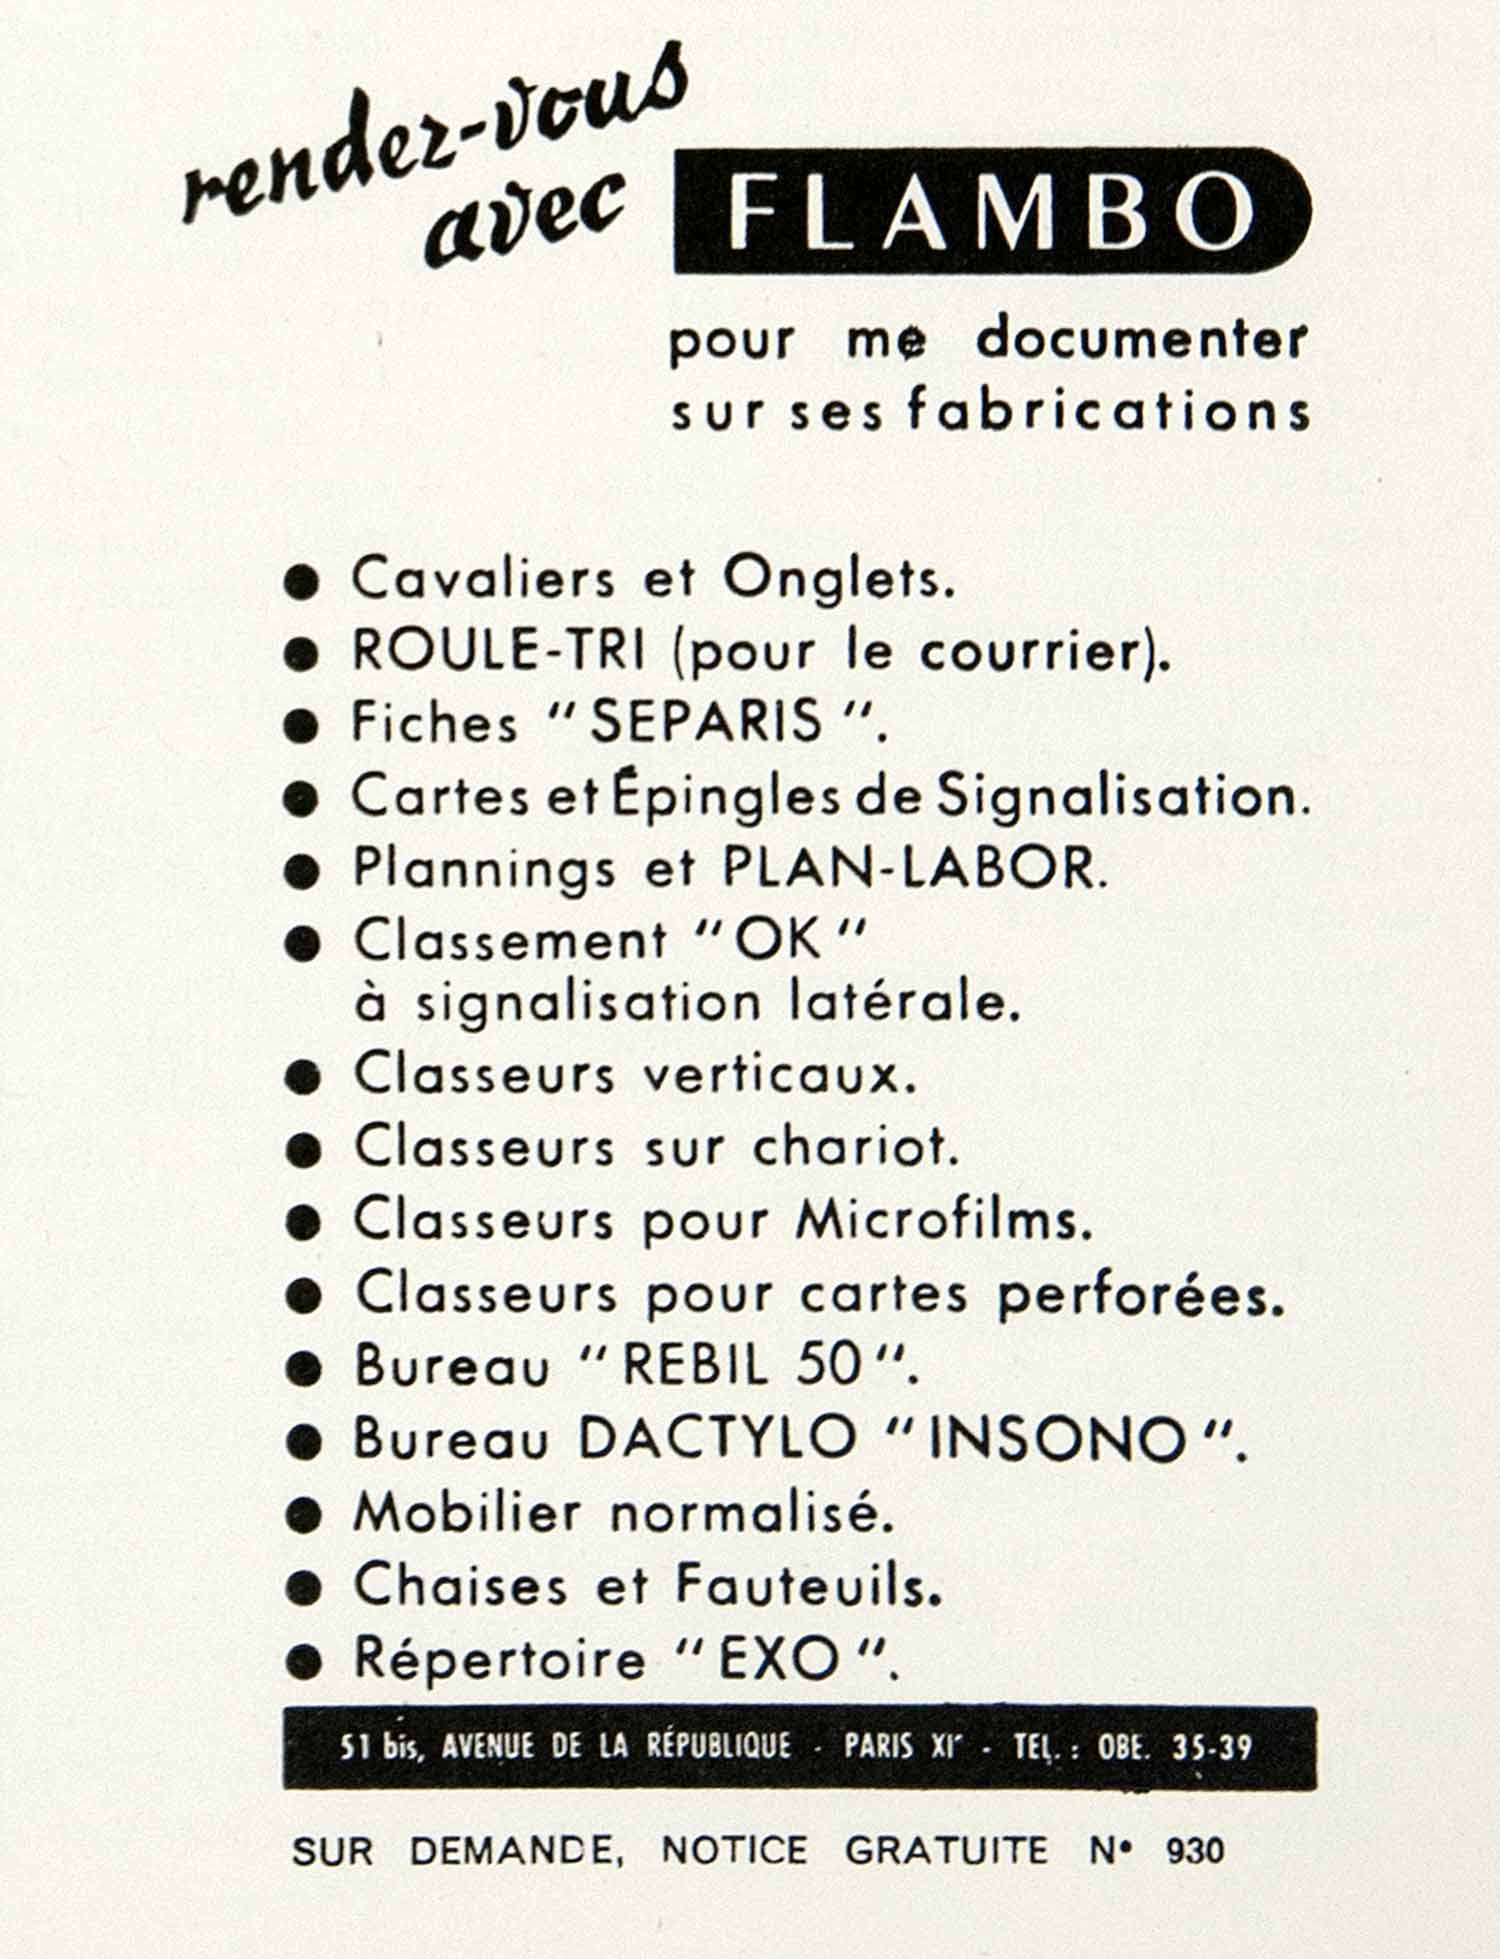 1955 Ad Flambo Paris France Avenue de la Republique French Advertising VEN2